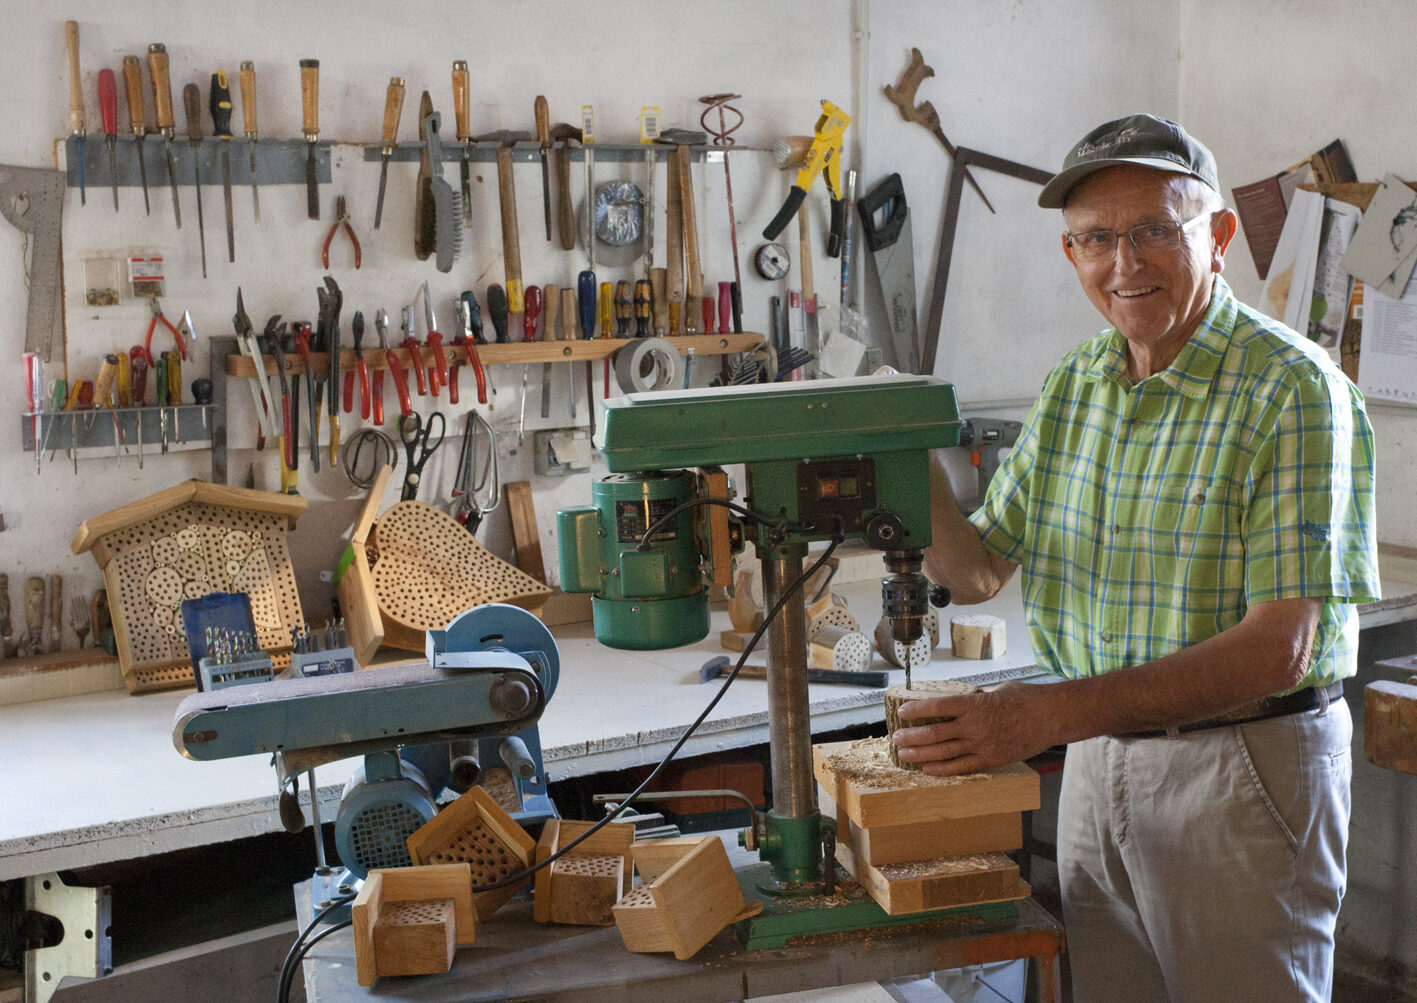 Jedes Insektenhotel ist ein Unikat, dass der 77-jährige Gerhard Sasse aus Liebenau-Lamerden in Handarbeit in seiner Werkstatt gefertigt hat.